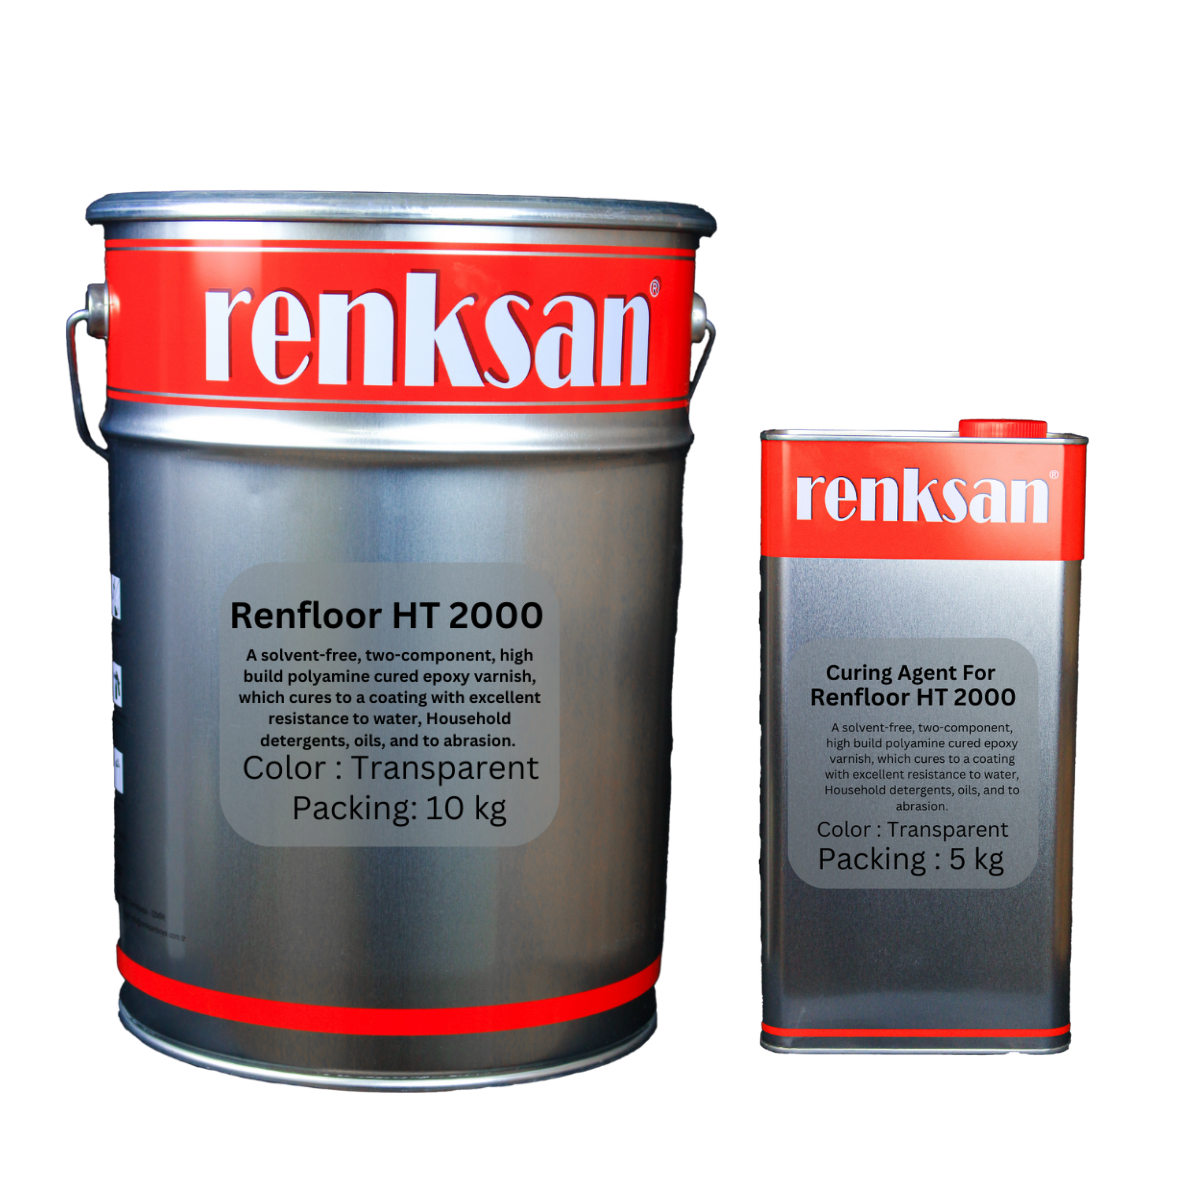 رينكسان رينفلور HT 2000 هو ريزين ايبوكسي شفاف يستند في تركيبته علي بولياميد الايبوكسي   ليعطي طبقة مقاومة للماء و المواد الكيميائية والاهتراء الميكانيكي.